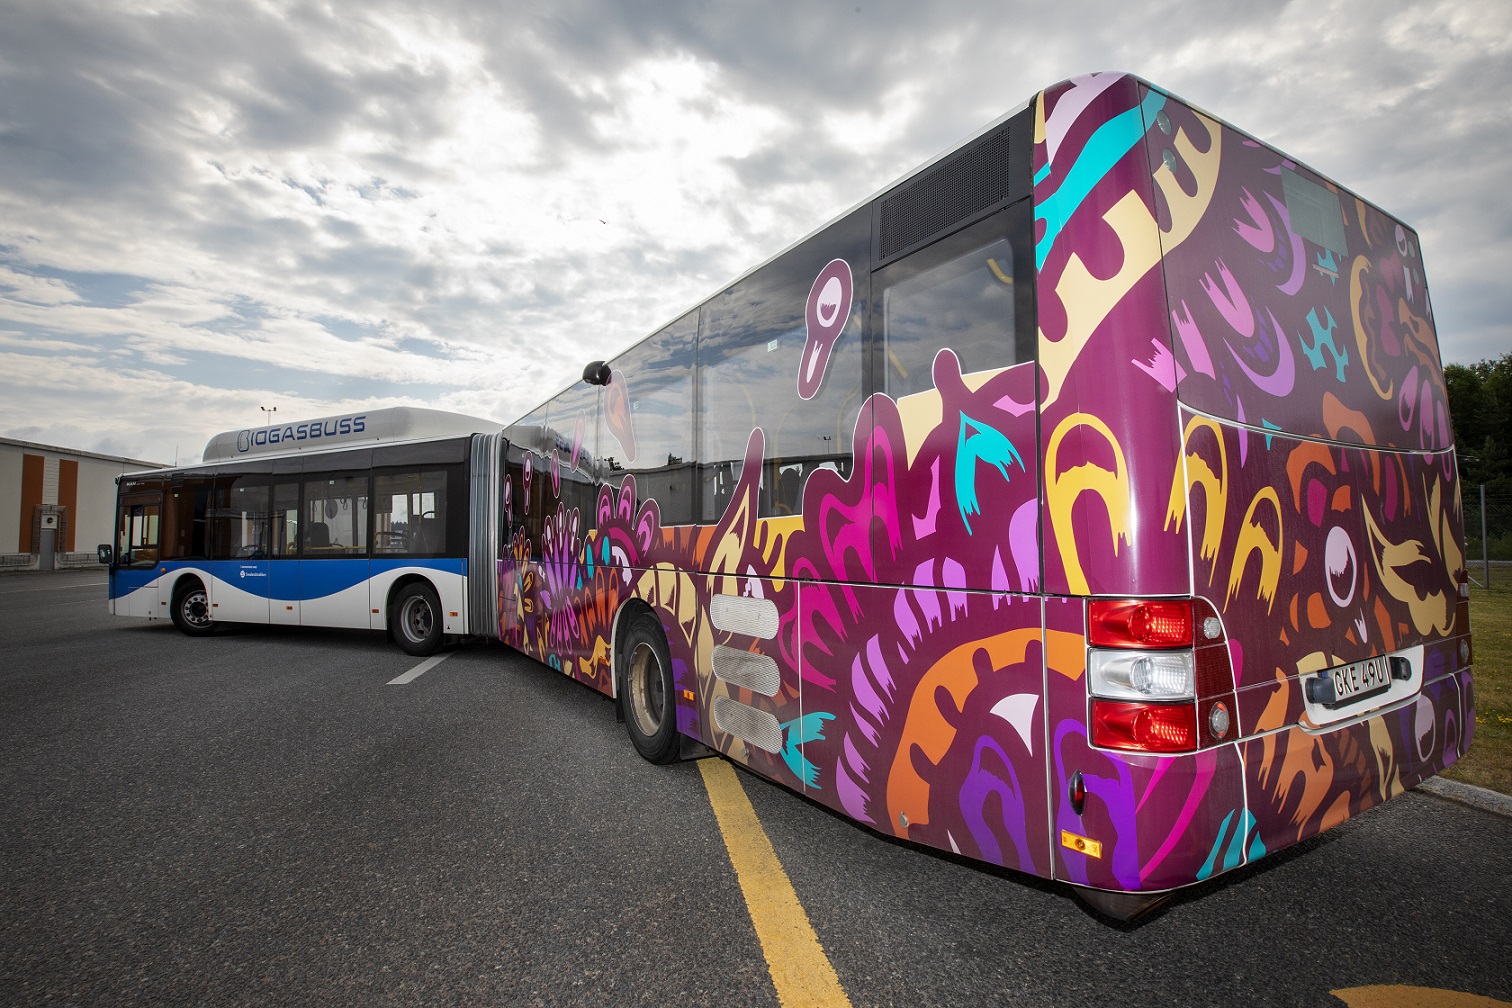 En av stadens stadsbussar, en ledbuss som har ena halvan utsmyckad med ett tryck av ett blom mönster. Mönstret går i olika former och är främst i färgen lila men även konturer i färgerna gul, orange, blå samt rosa.